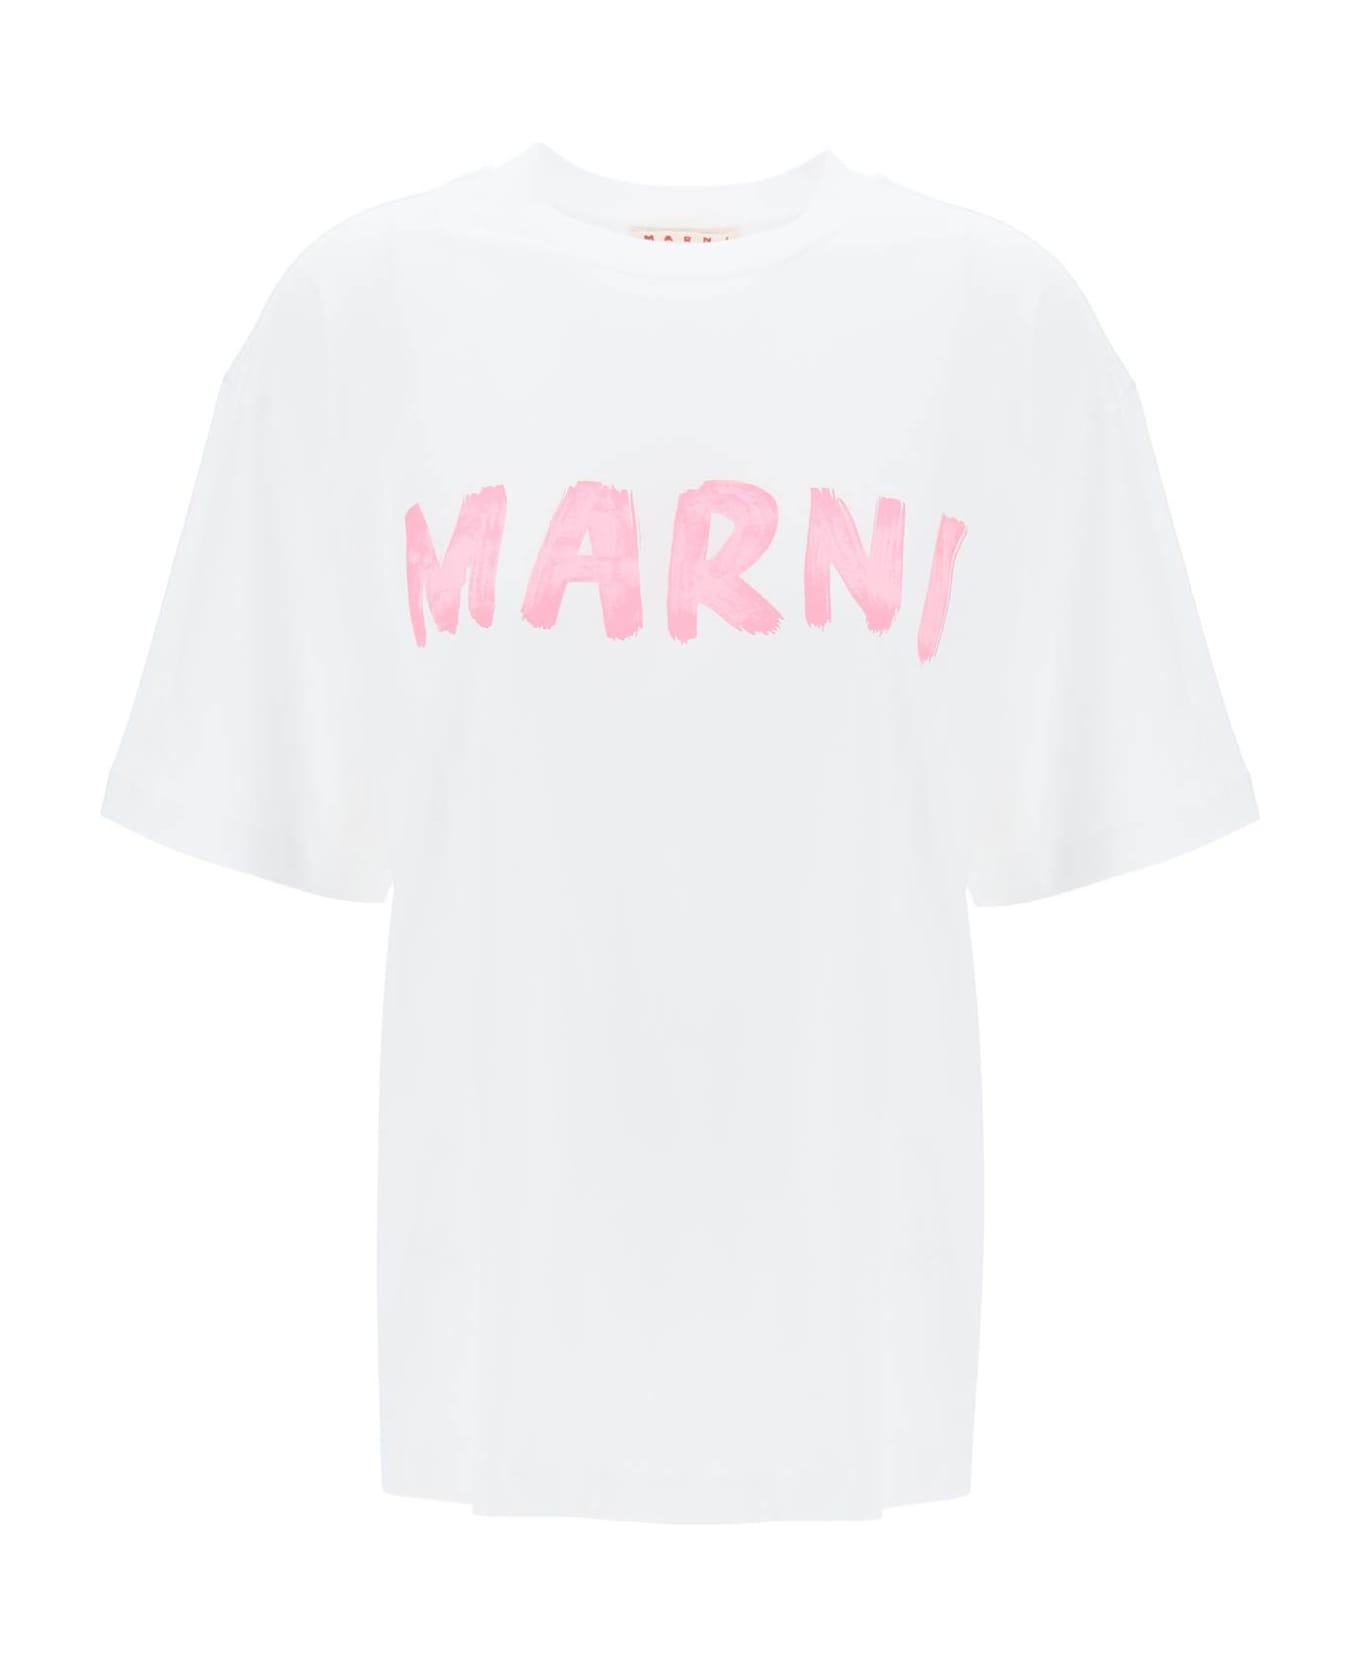 Marni Logo T-shirt - L5W01 Tシャツ